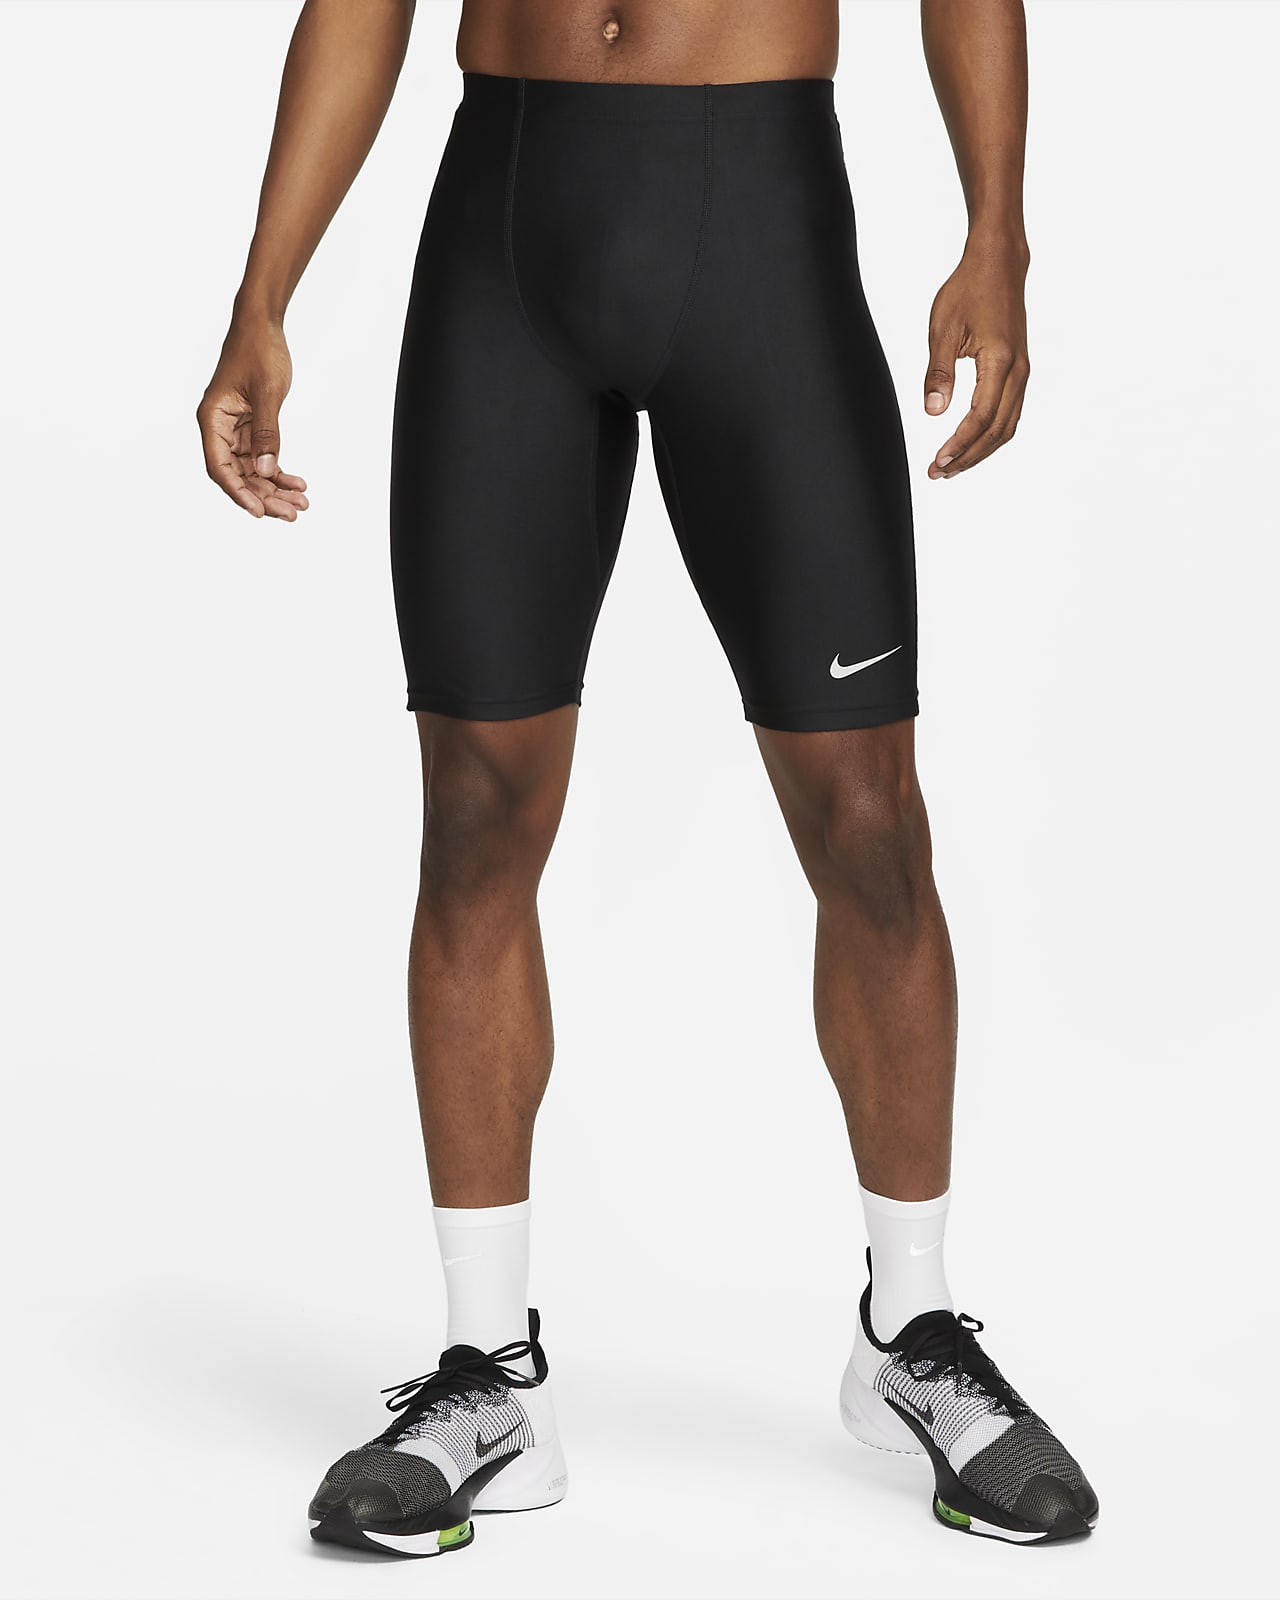 Nike Dri-FIT Fast halflange wedstrijdtights voor heren